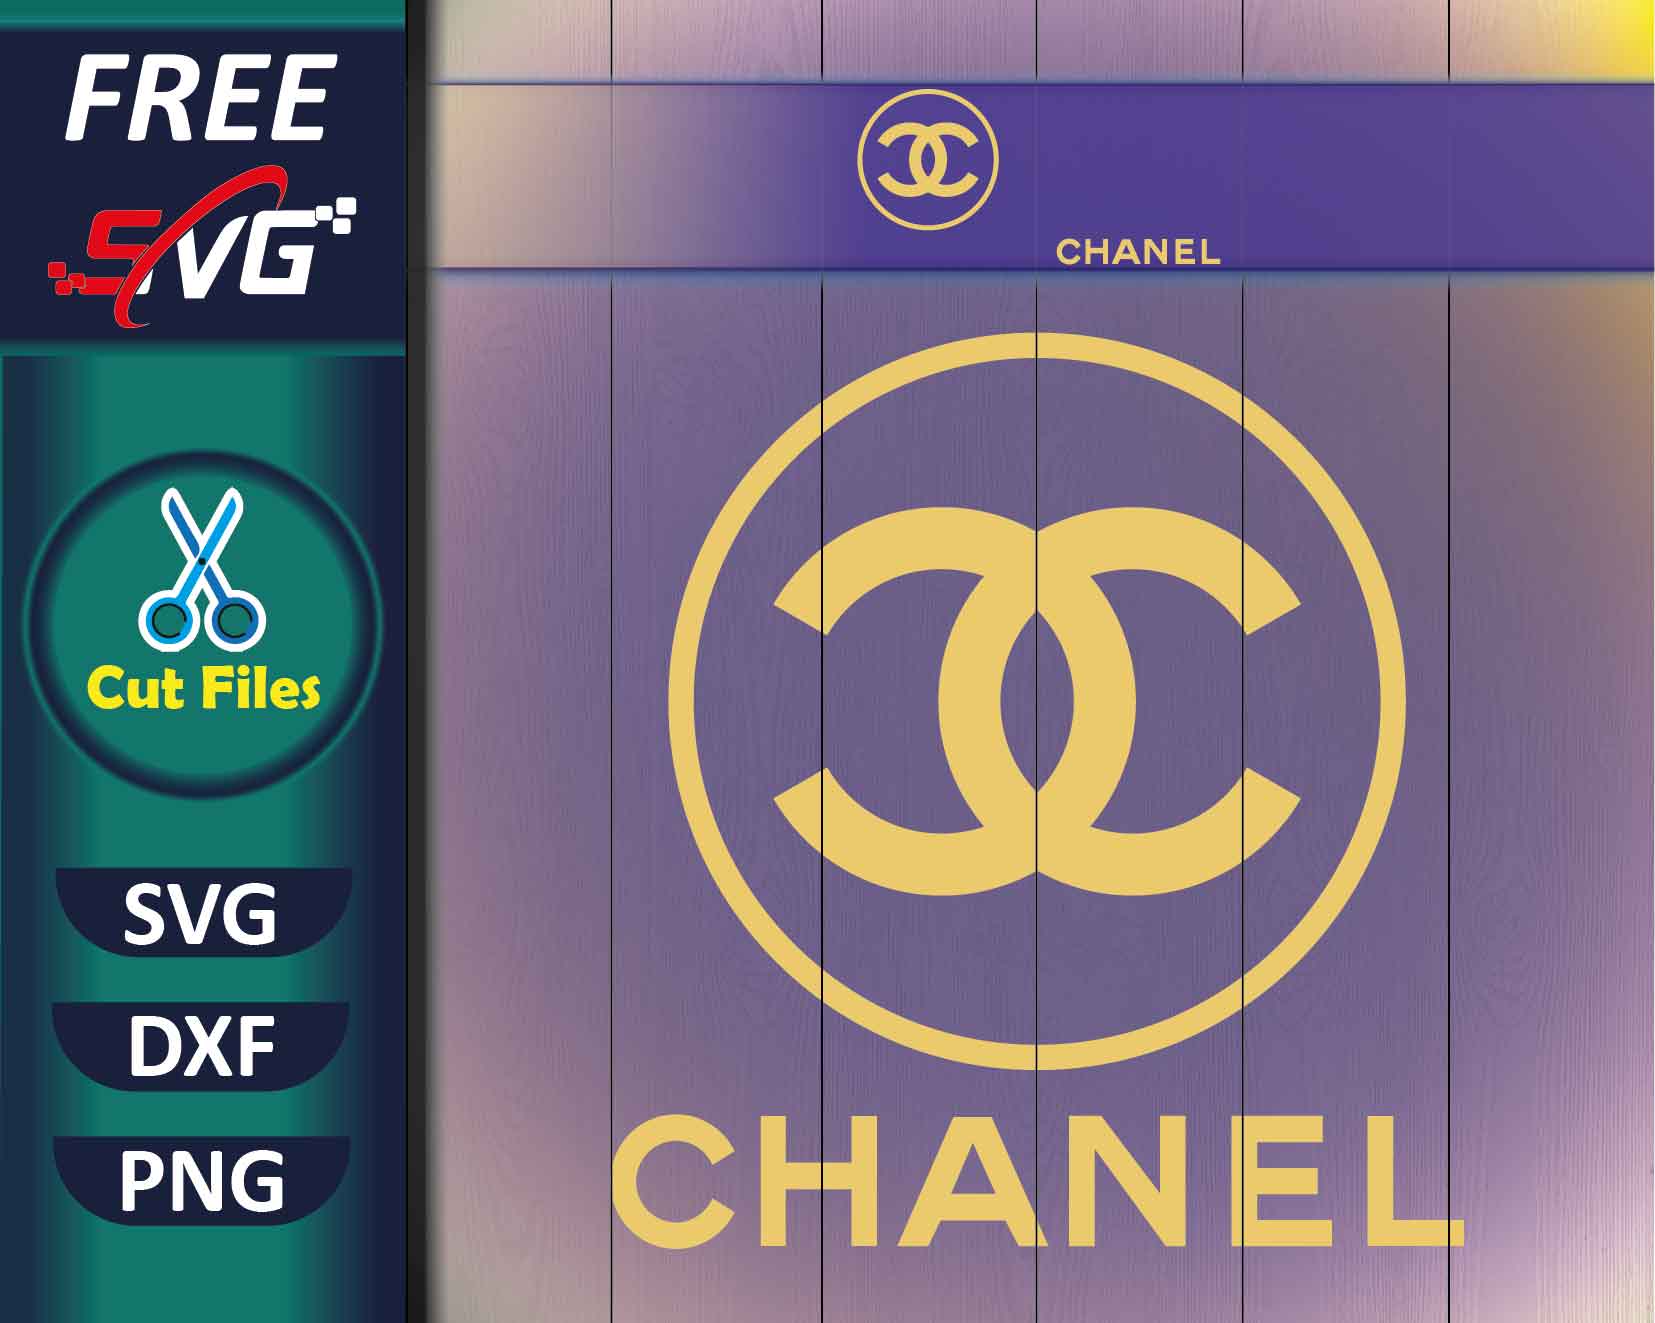 Chanel SVG & PNG Download - Free SVG Download